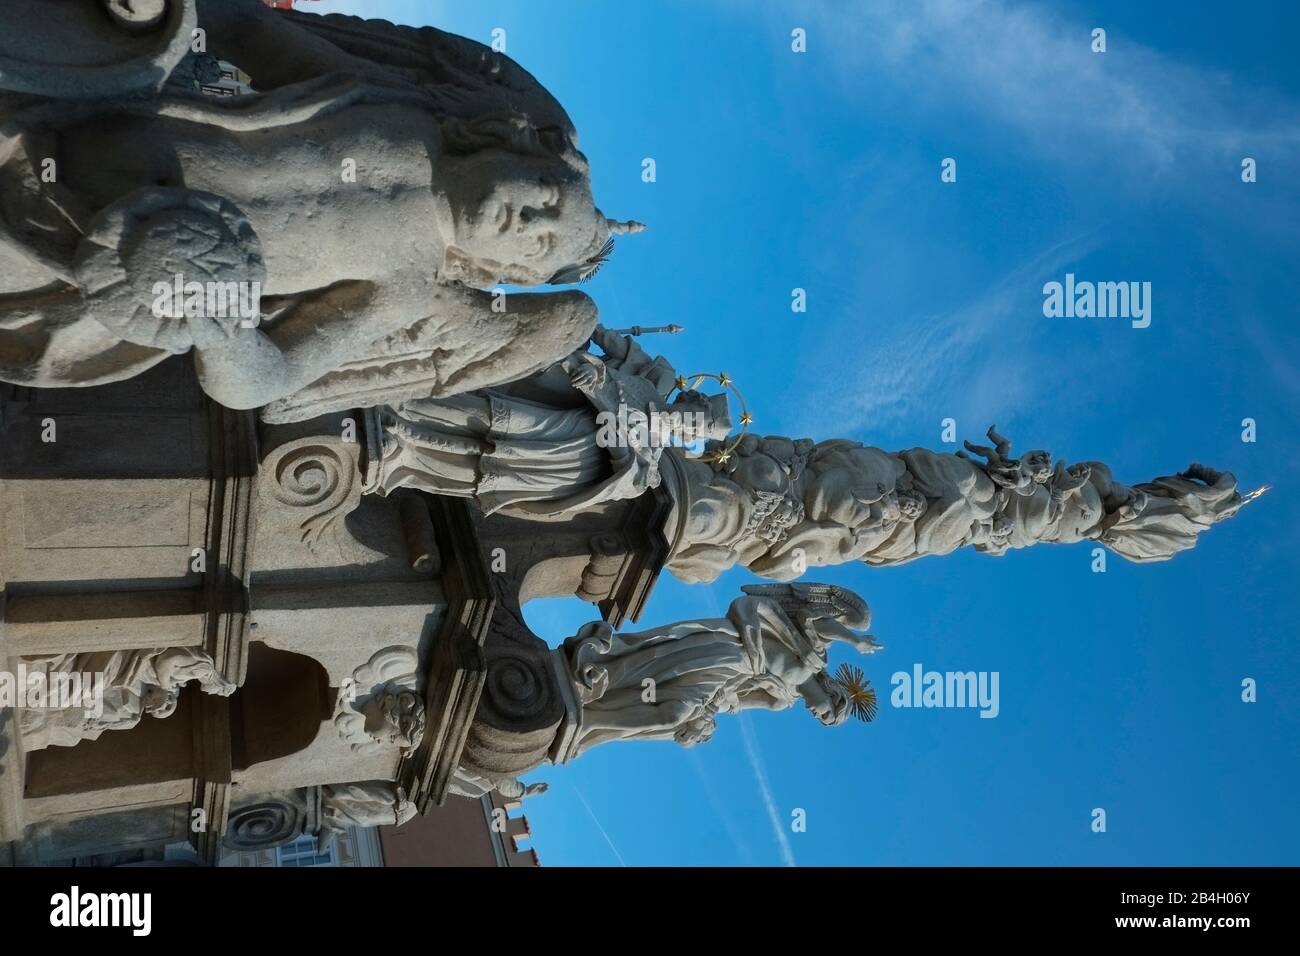 República Checa, monumento a la peste barroca, Telc, muerte negra, placa, Patrimonio de la Humanidad de la UNESCO, Moravia, Arquitectura barroca Foto de stock